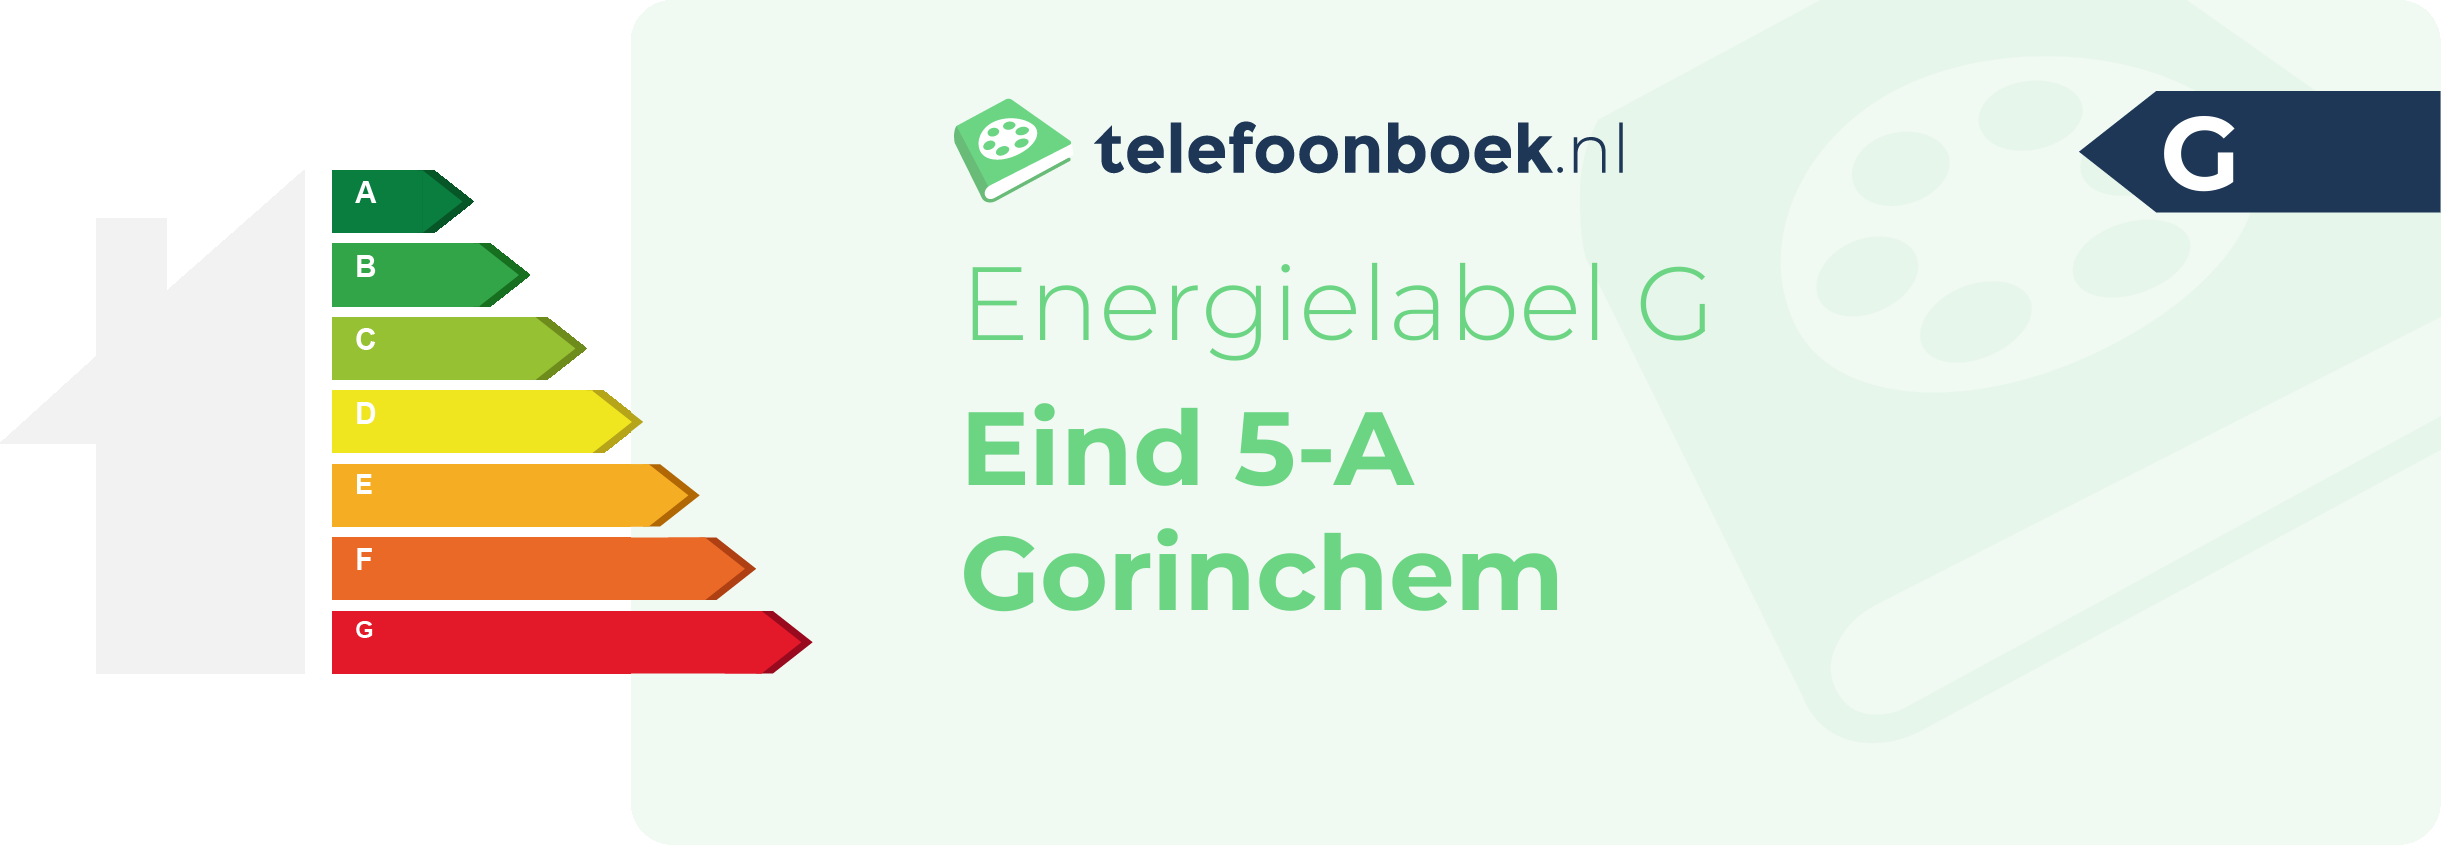 Energielabel Eind 5-A Gorinchem